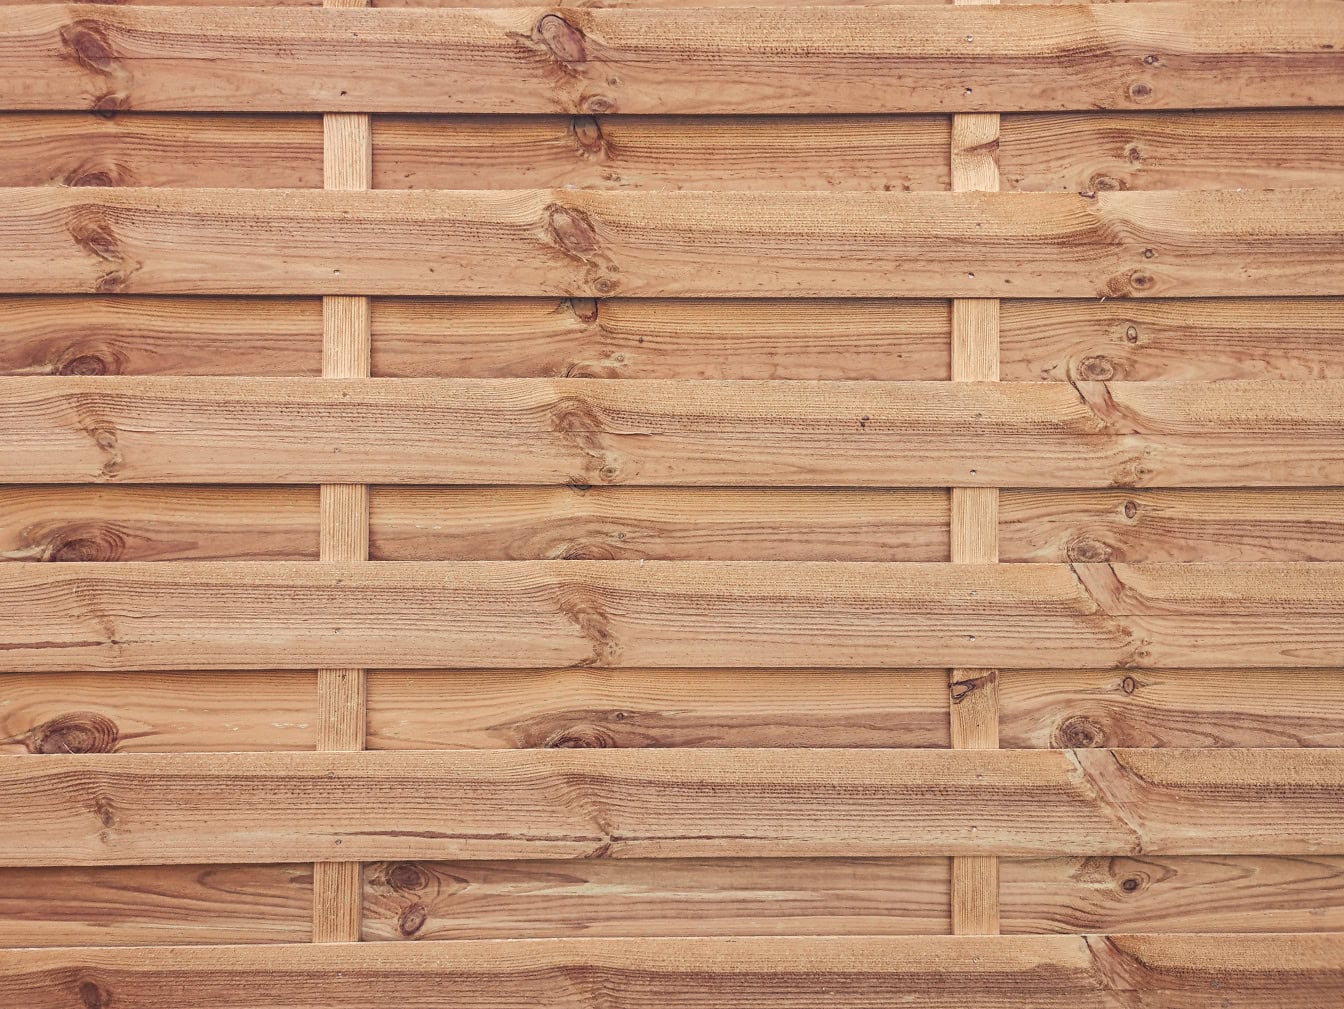 Kết cấu của một bức tường gỗ làm bằng ván gỗ mỏng với các nút thắt xếp chồng lên nhau theo chiều ngang